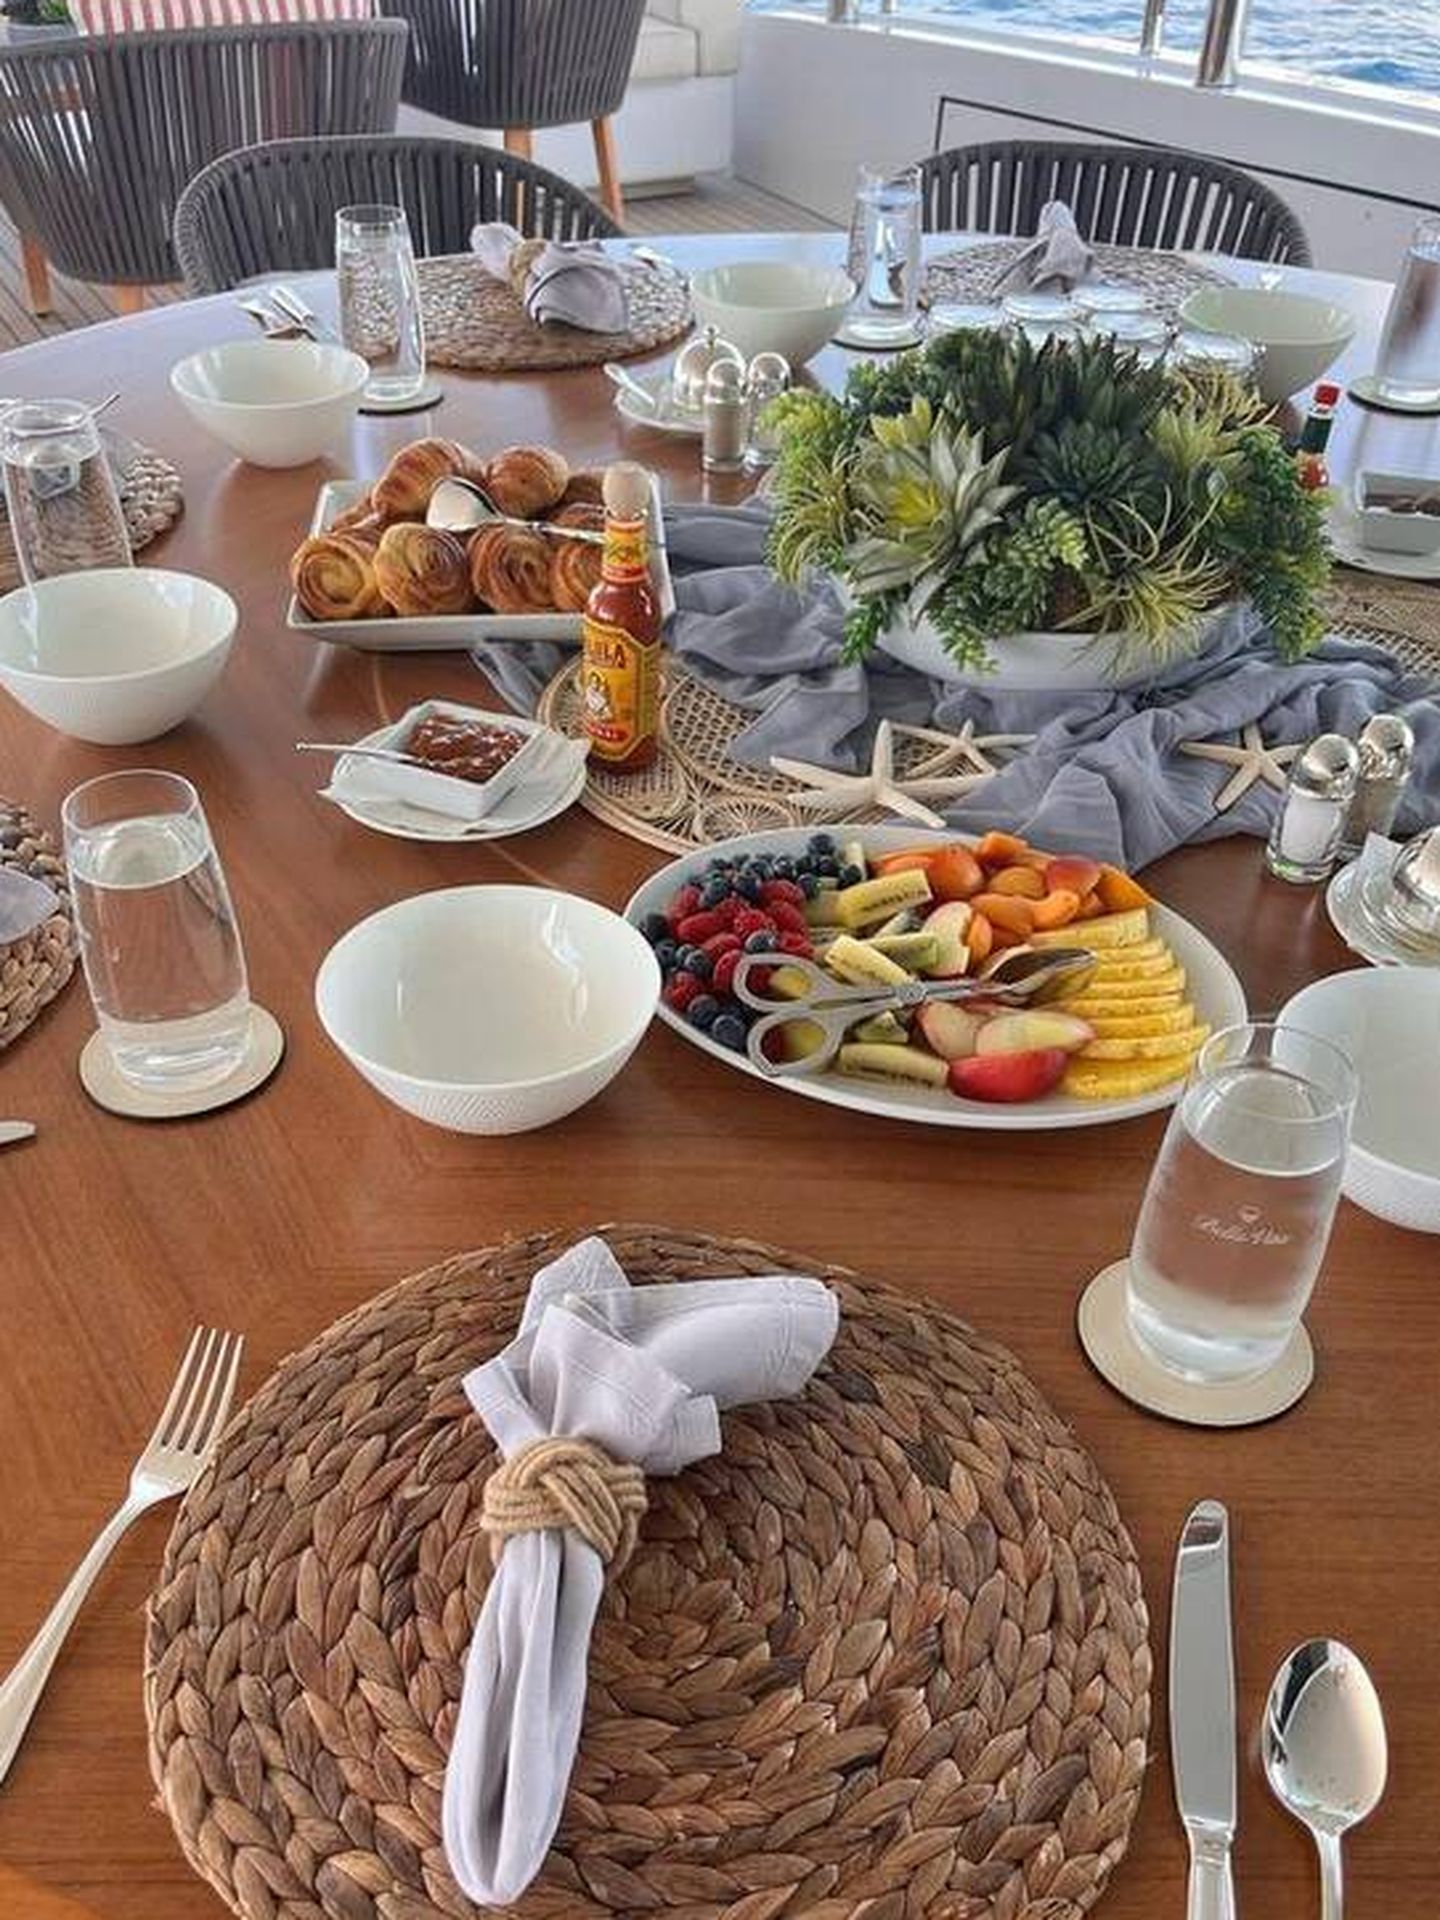 Detalle del desayuno publicado por Lourdes Montes. (Instagram/@lmontesoficial)